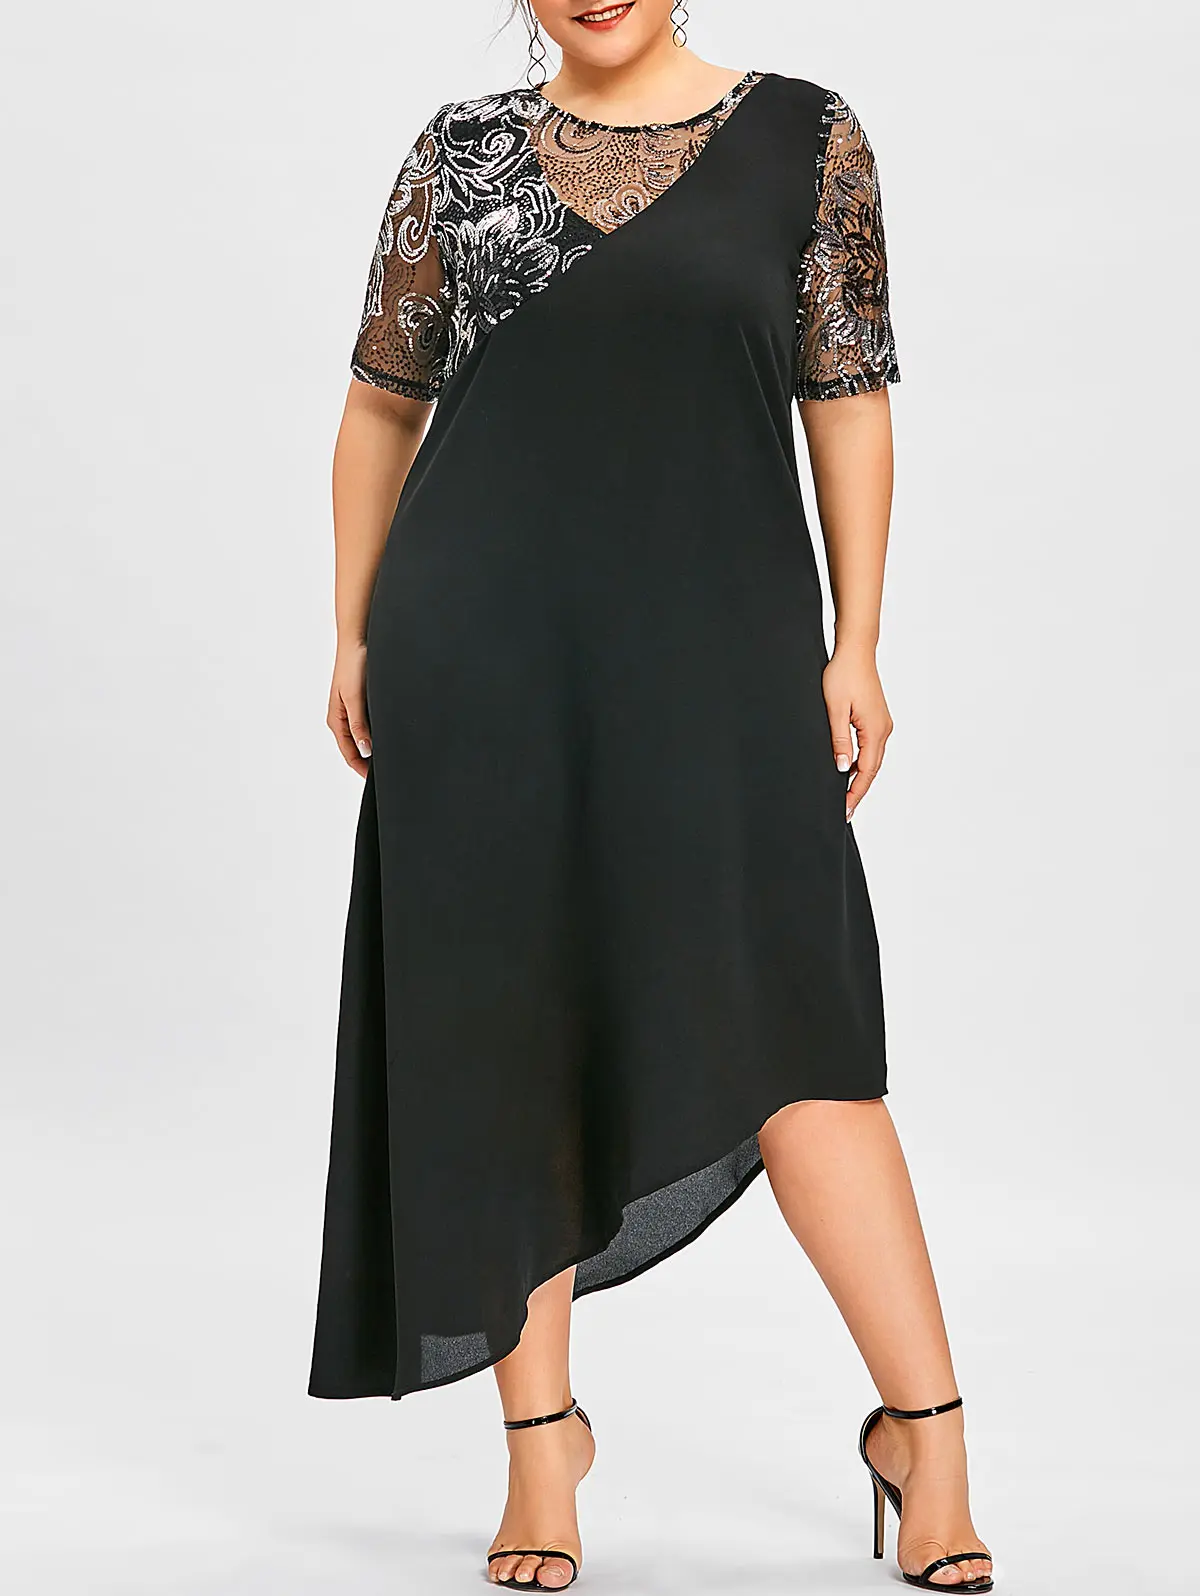 Wipalo Женское ассиметричное вечернее коктельное платье макси большого размера с паетками, элегантное летнее черное платье 5XL, платье с коротким рукавом - Цвет: Black